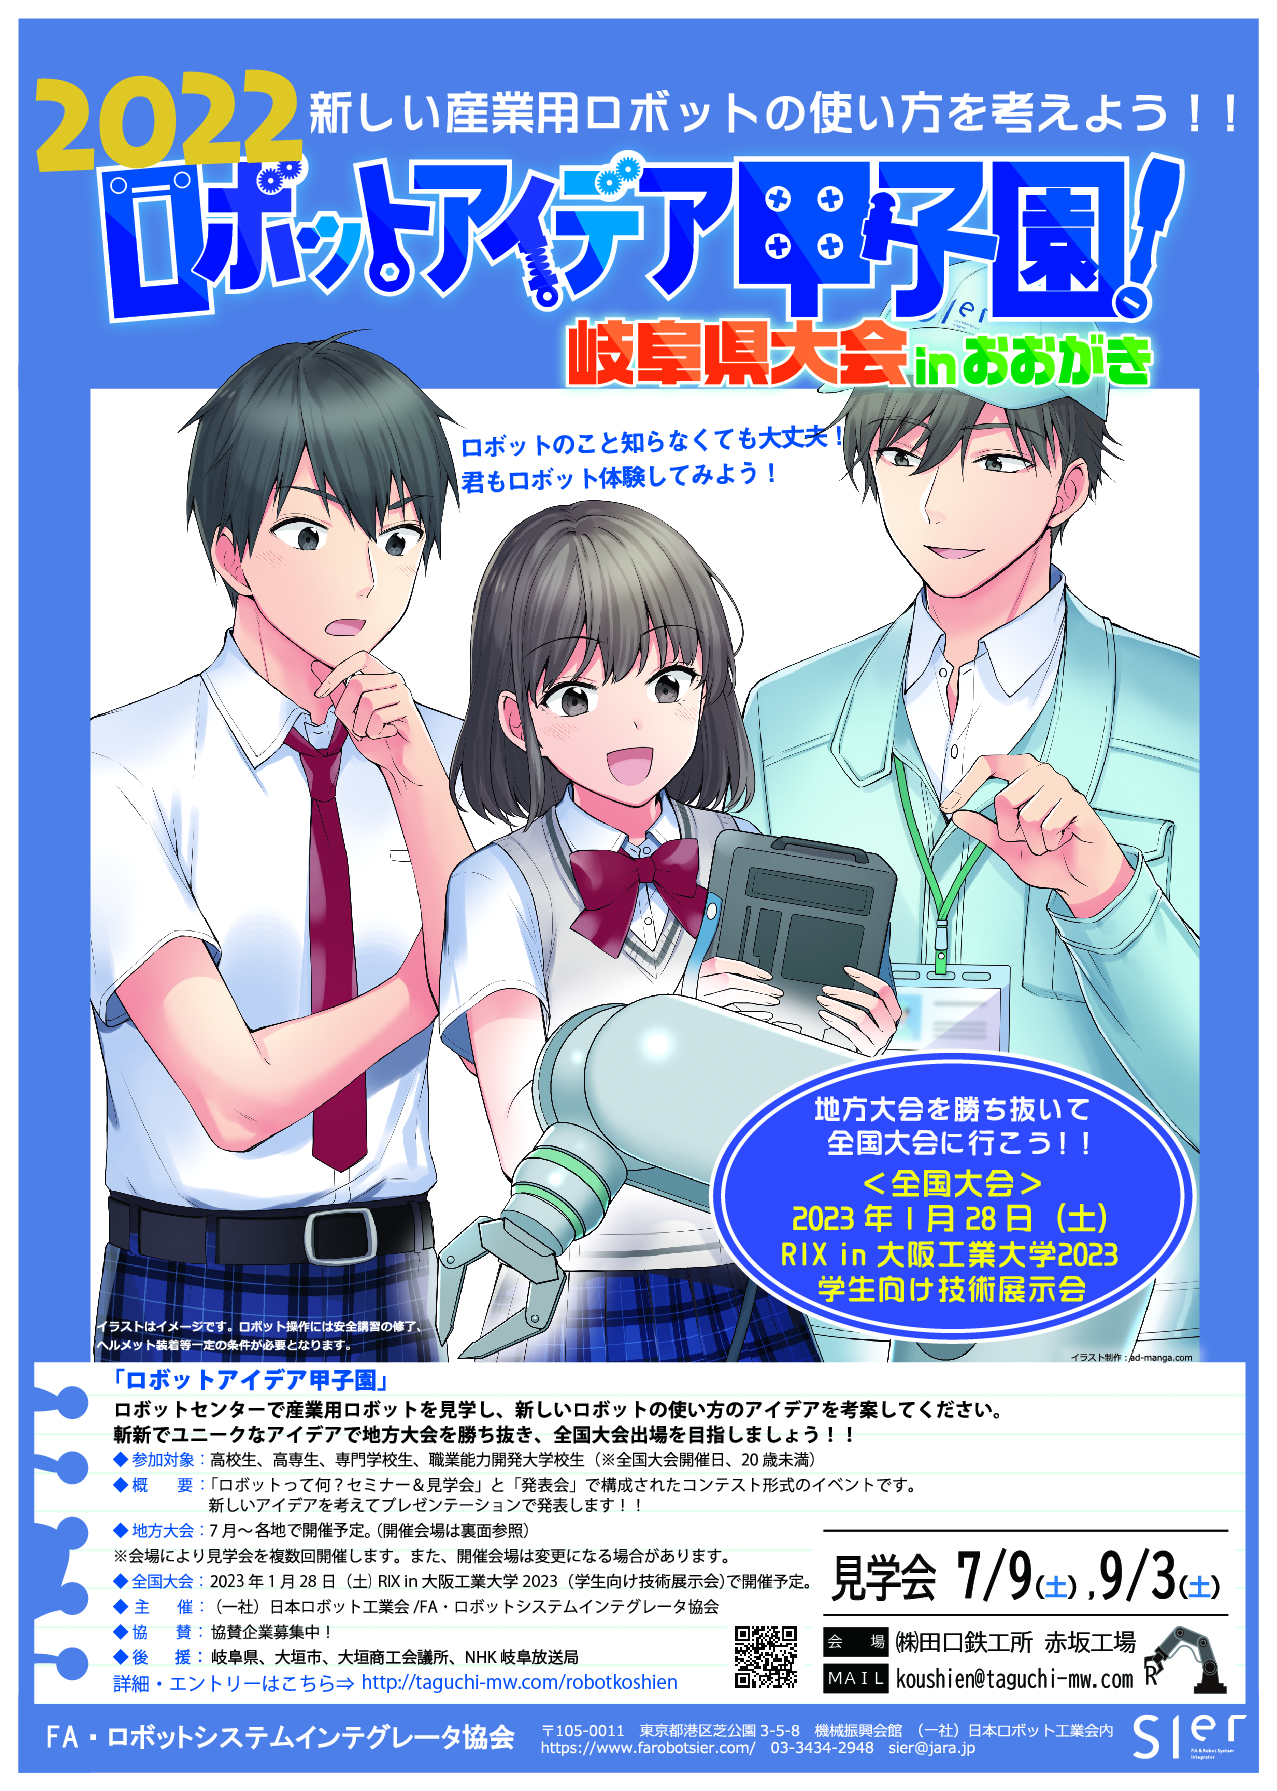 2022 ロボットアイデア甲子園 岐阜県大会